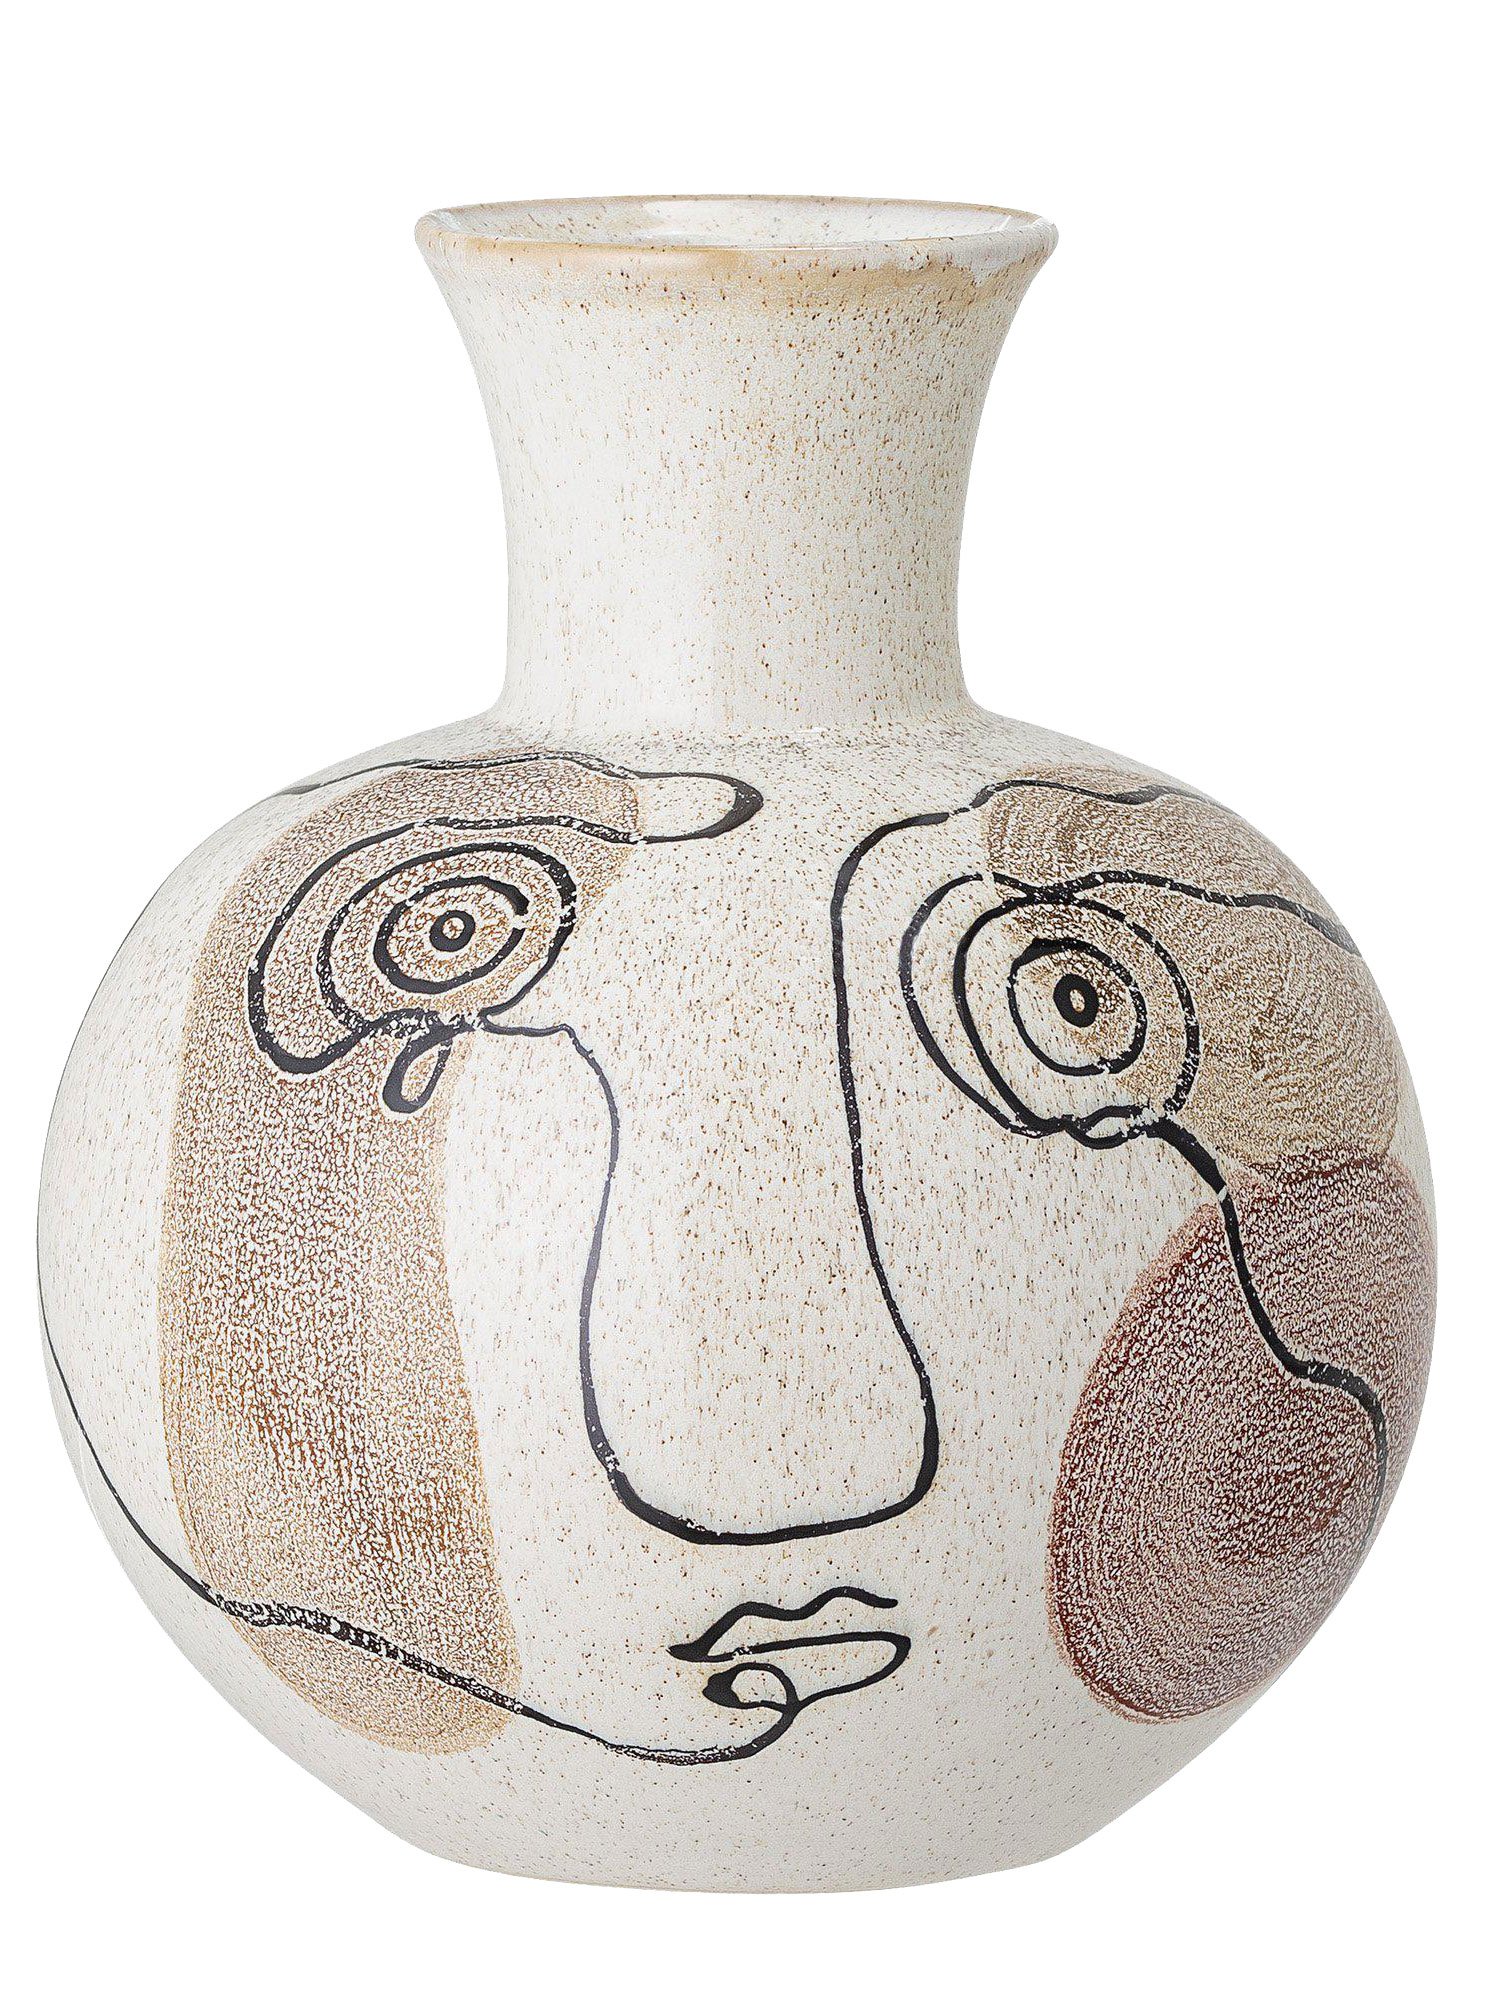 Schau mich an: Die Keramik-Vase mit abstraktem Lineart-Design passt perfekt in die farblichen Vorgaben für 2021: ruhig, neutral, erdig. beaumonde.co.uk